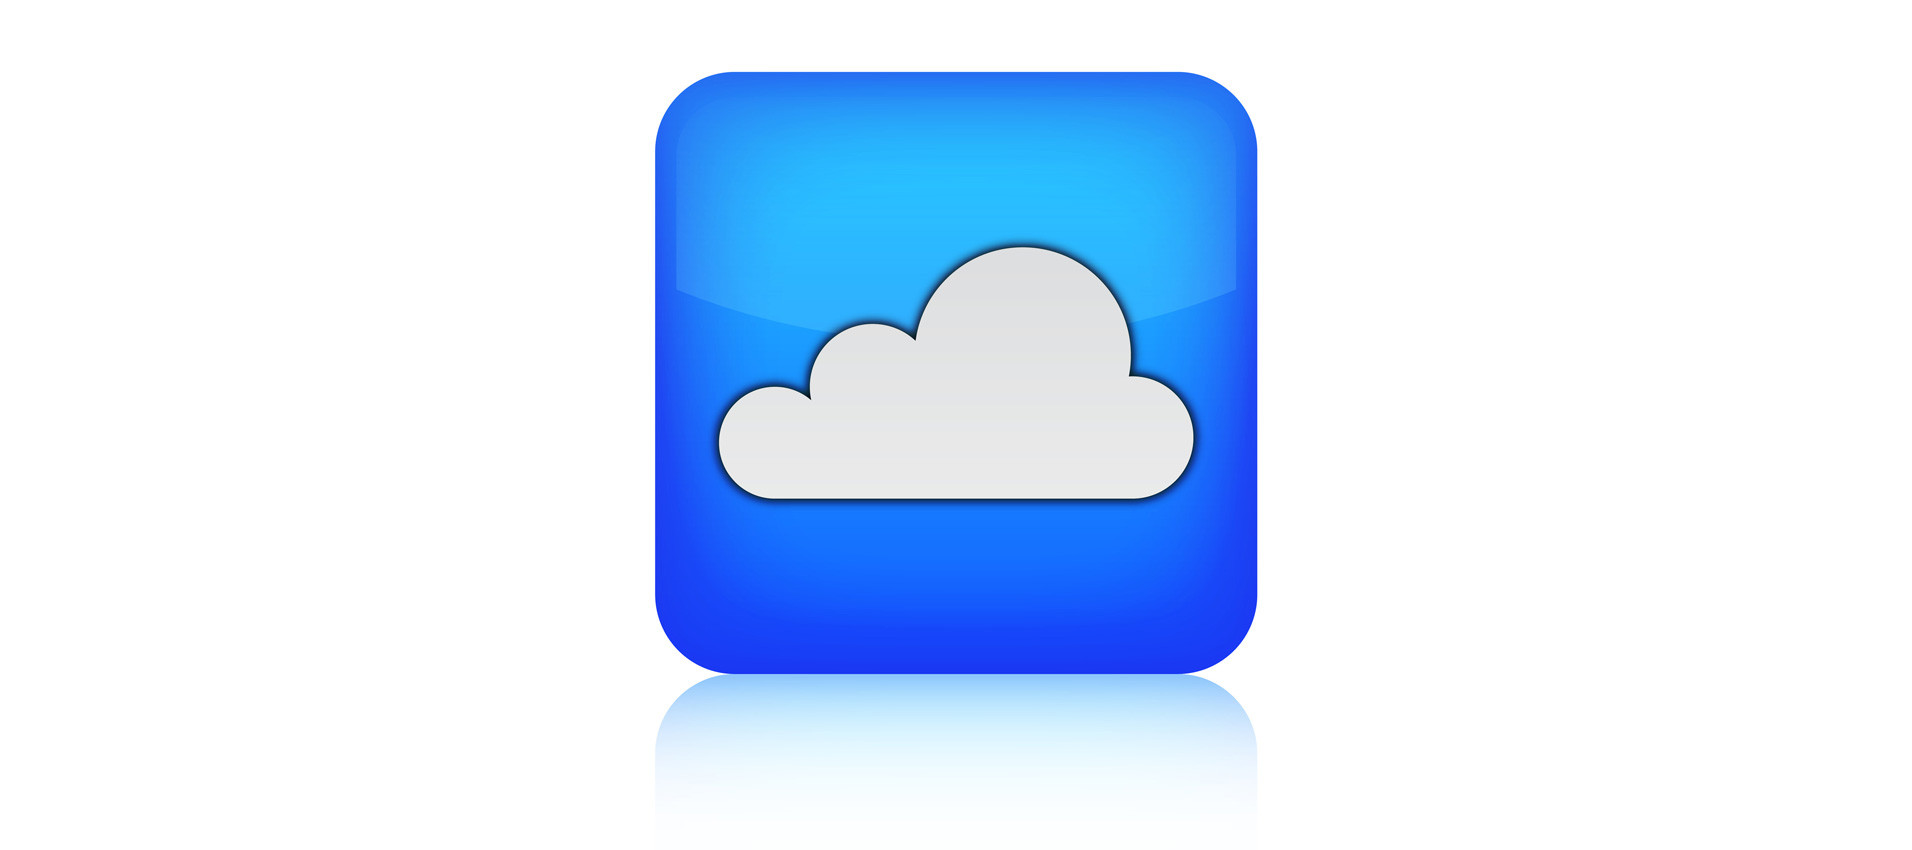 Bulut Tabanlı (Cloud Based) Yazılım Performans Testlerinin Faydaları